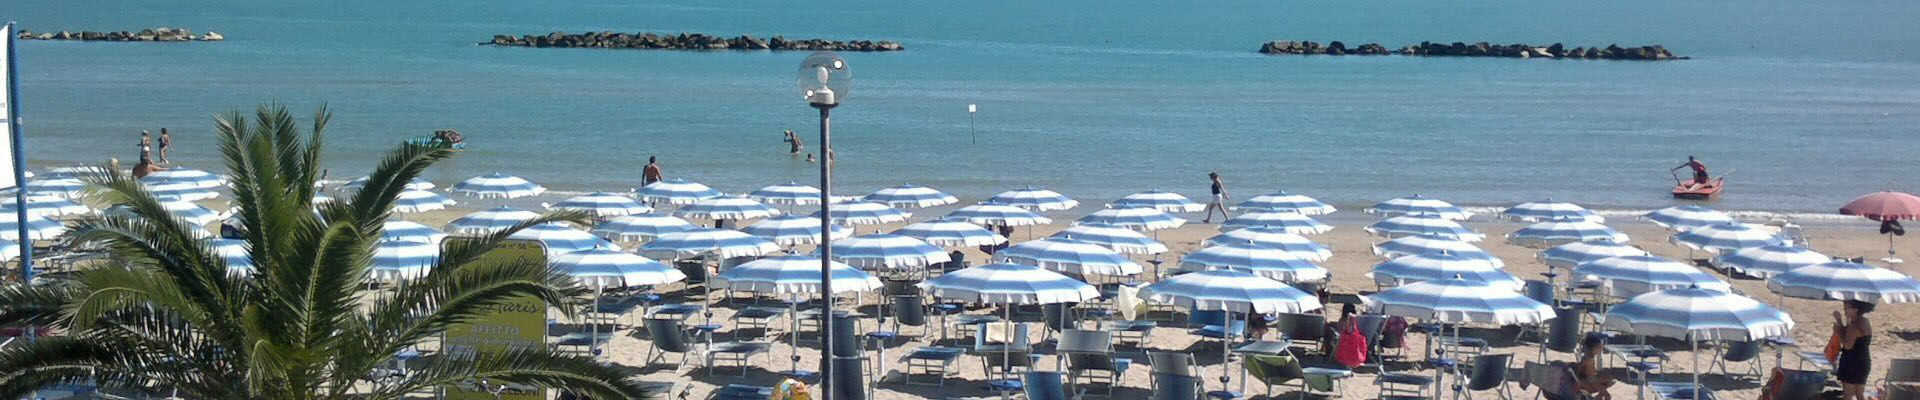 Camping - Piazzole per tende e camper a cologna Spiaggia di Roseto degli Abruzzi